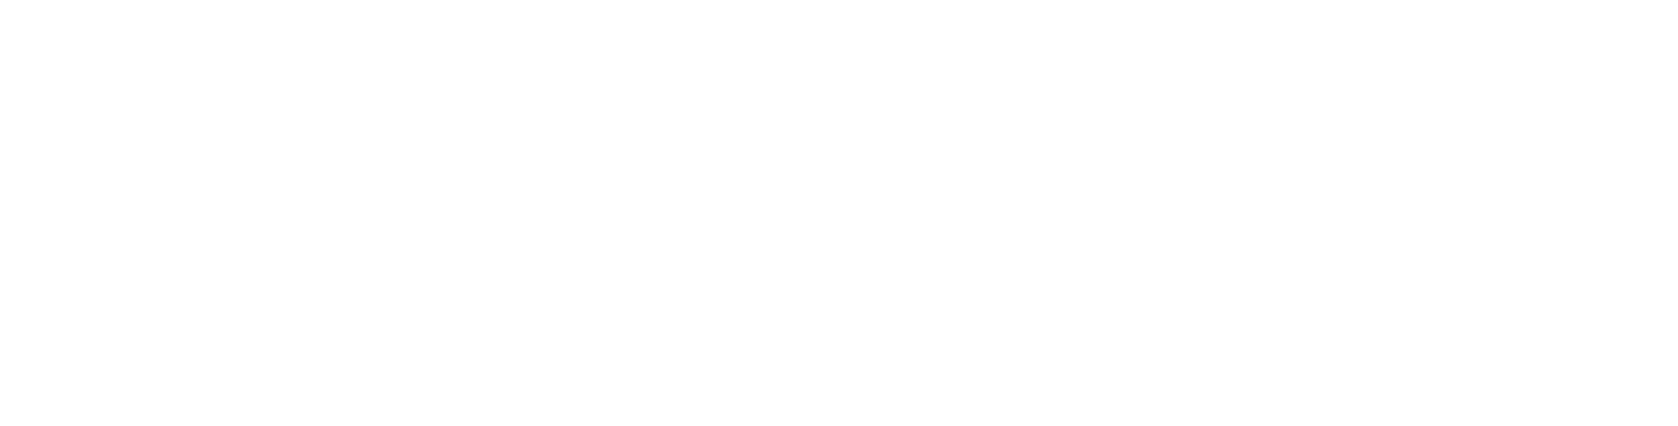 Legacy Lock